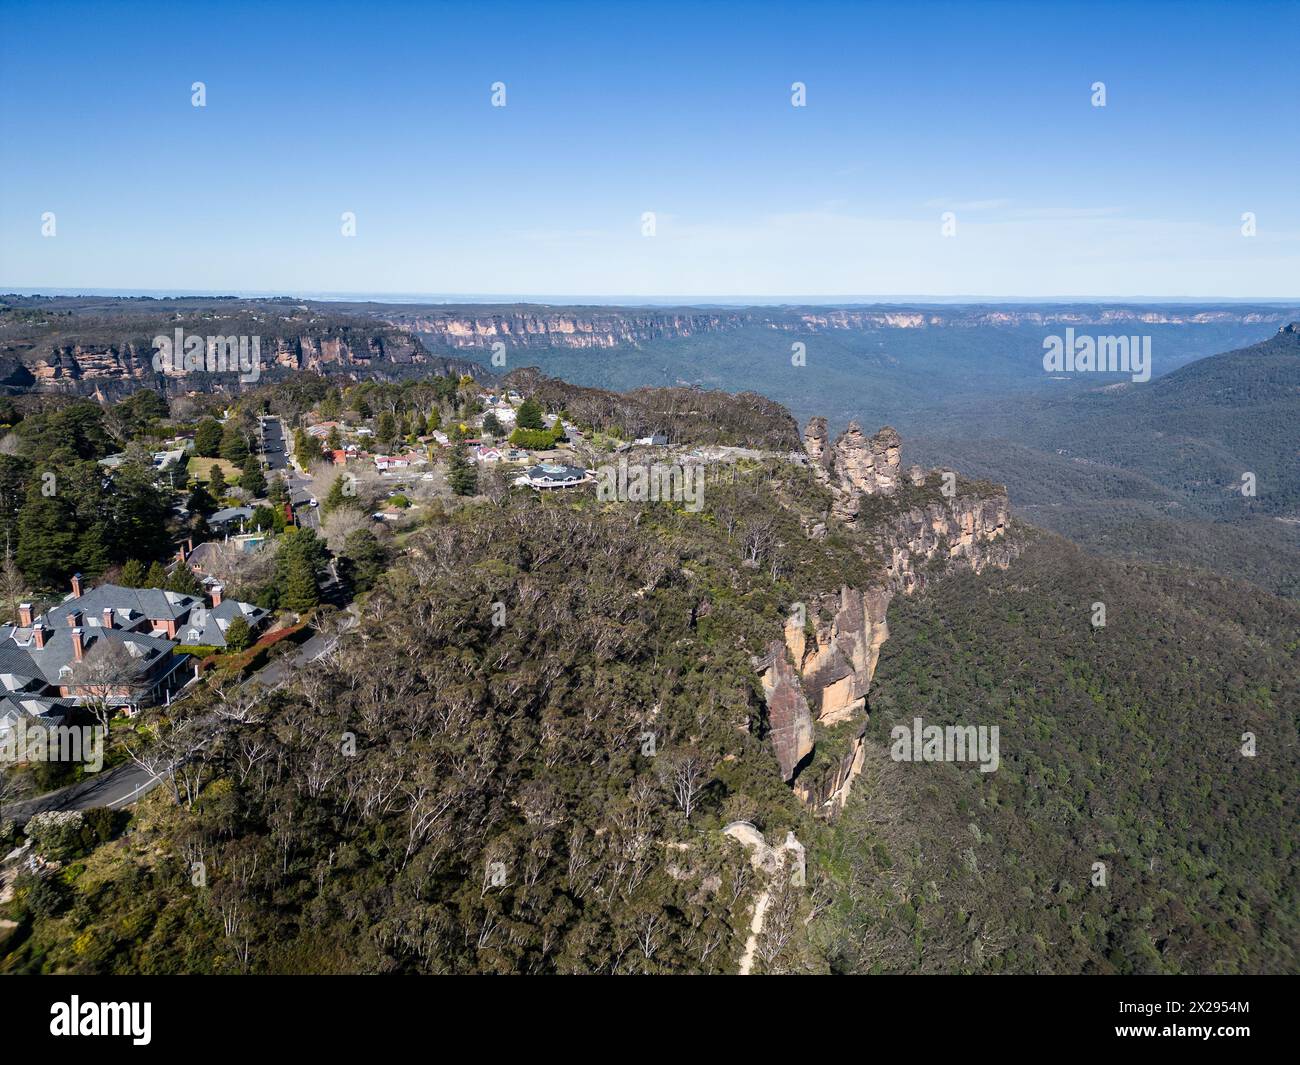 Katoomba, Australia: Aerea della città di Katoomba presso le famose Blue Mountains nella regione di Sydney nel nuovo Galles del Sud in Australia in una giornata di sole. Foto Stock